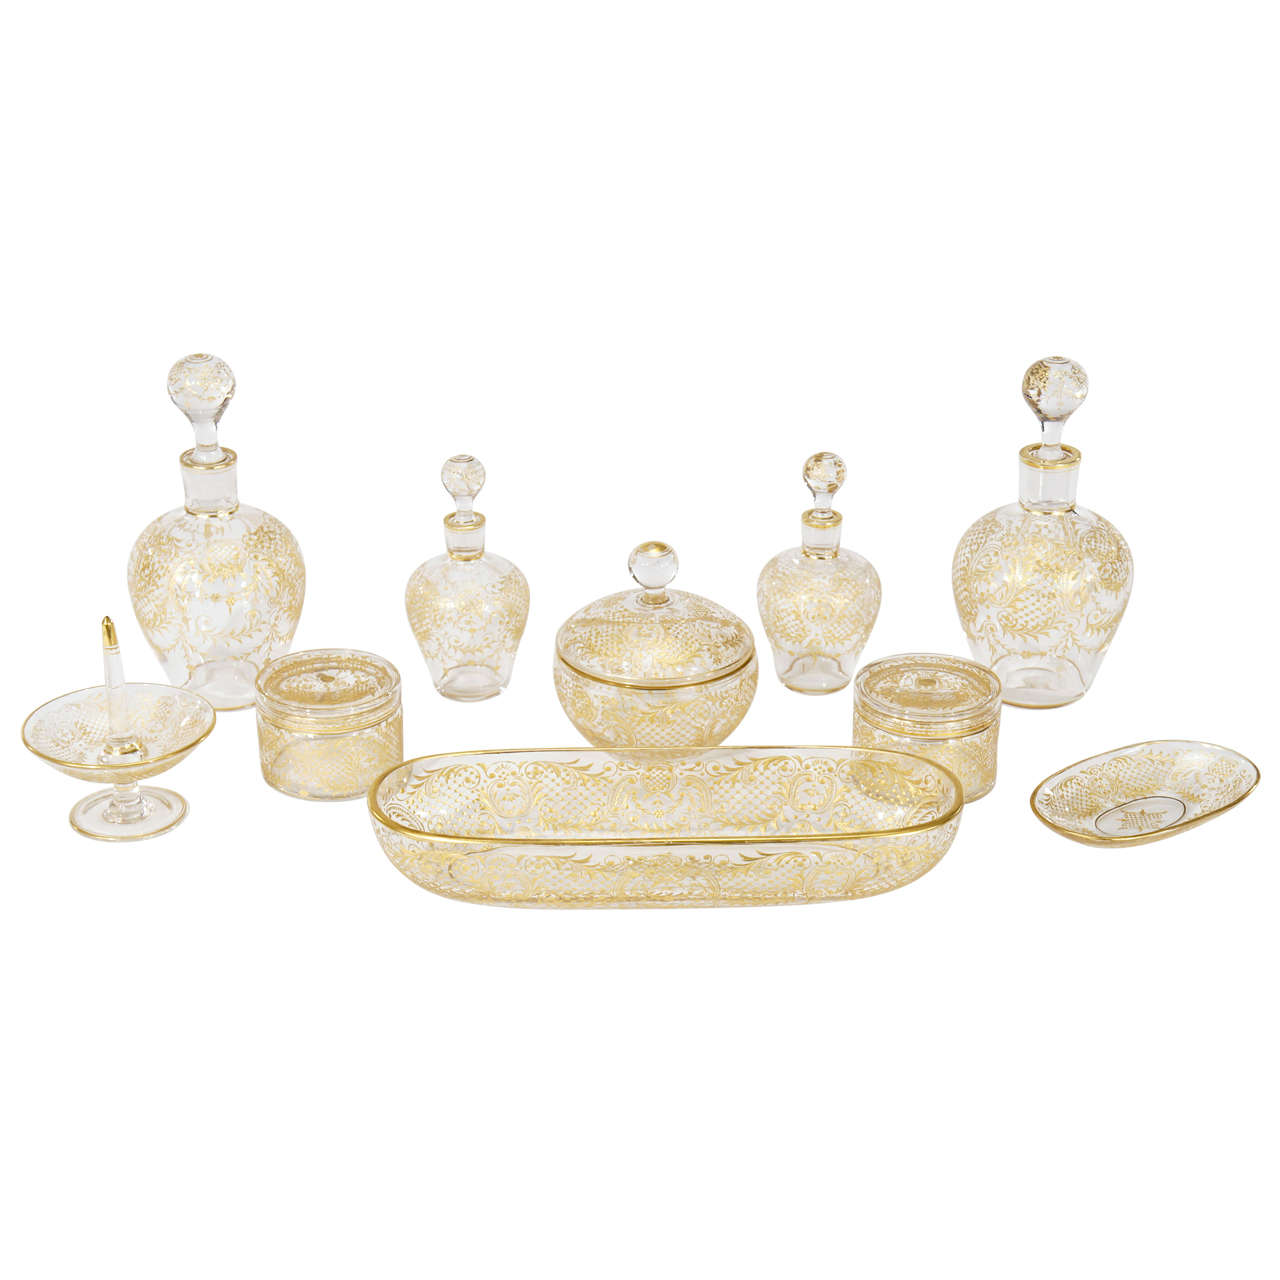 Baccarat/Moser Crystal 10 Piece Gilded/Gold Dresser Set